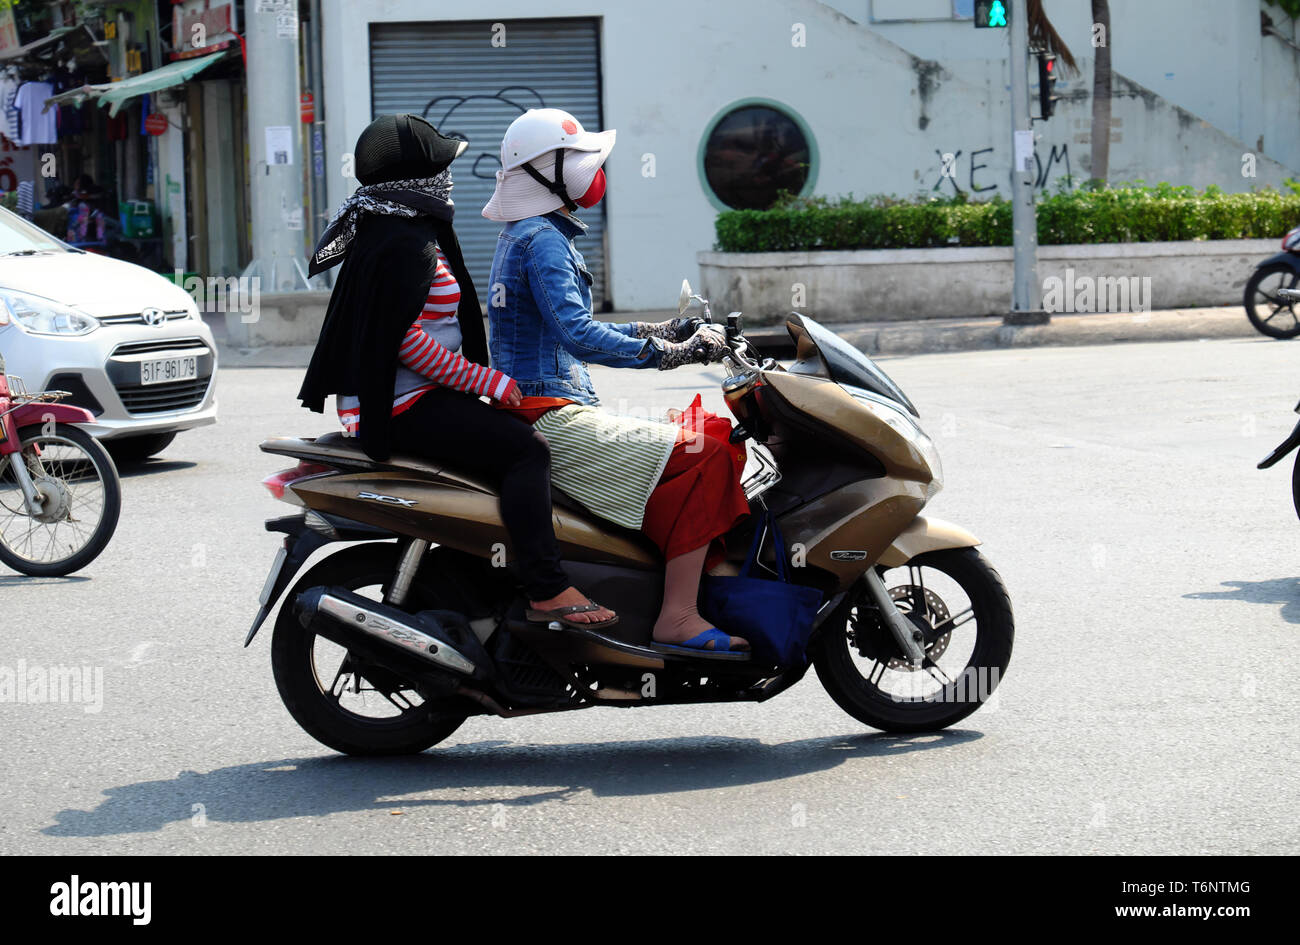 Vietnamesin Eine Schutzbrille, Gesichtsschutz, Mantel, Handschuhe,  Sonnenschutz, Fahrt Motorrad unter hoher Temperatur in heißen Tag, extreme  Wetterbedingungen, Vietnam Stockfotografie - Alamy